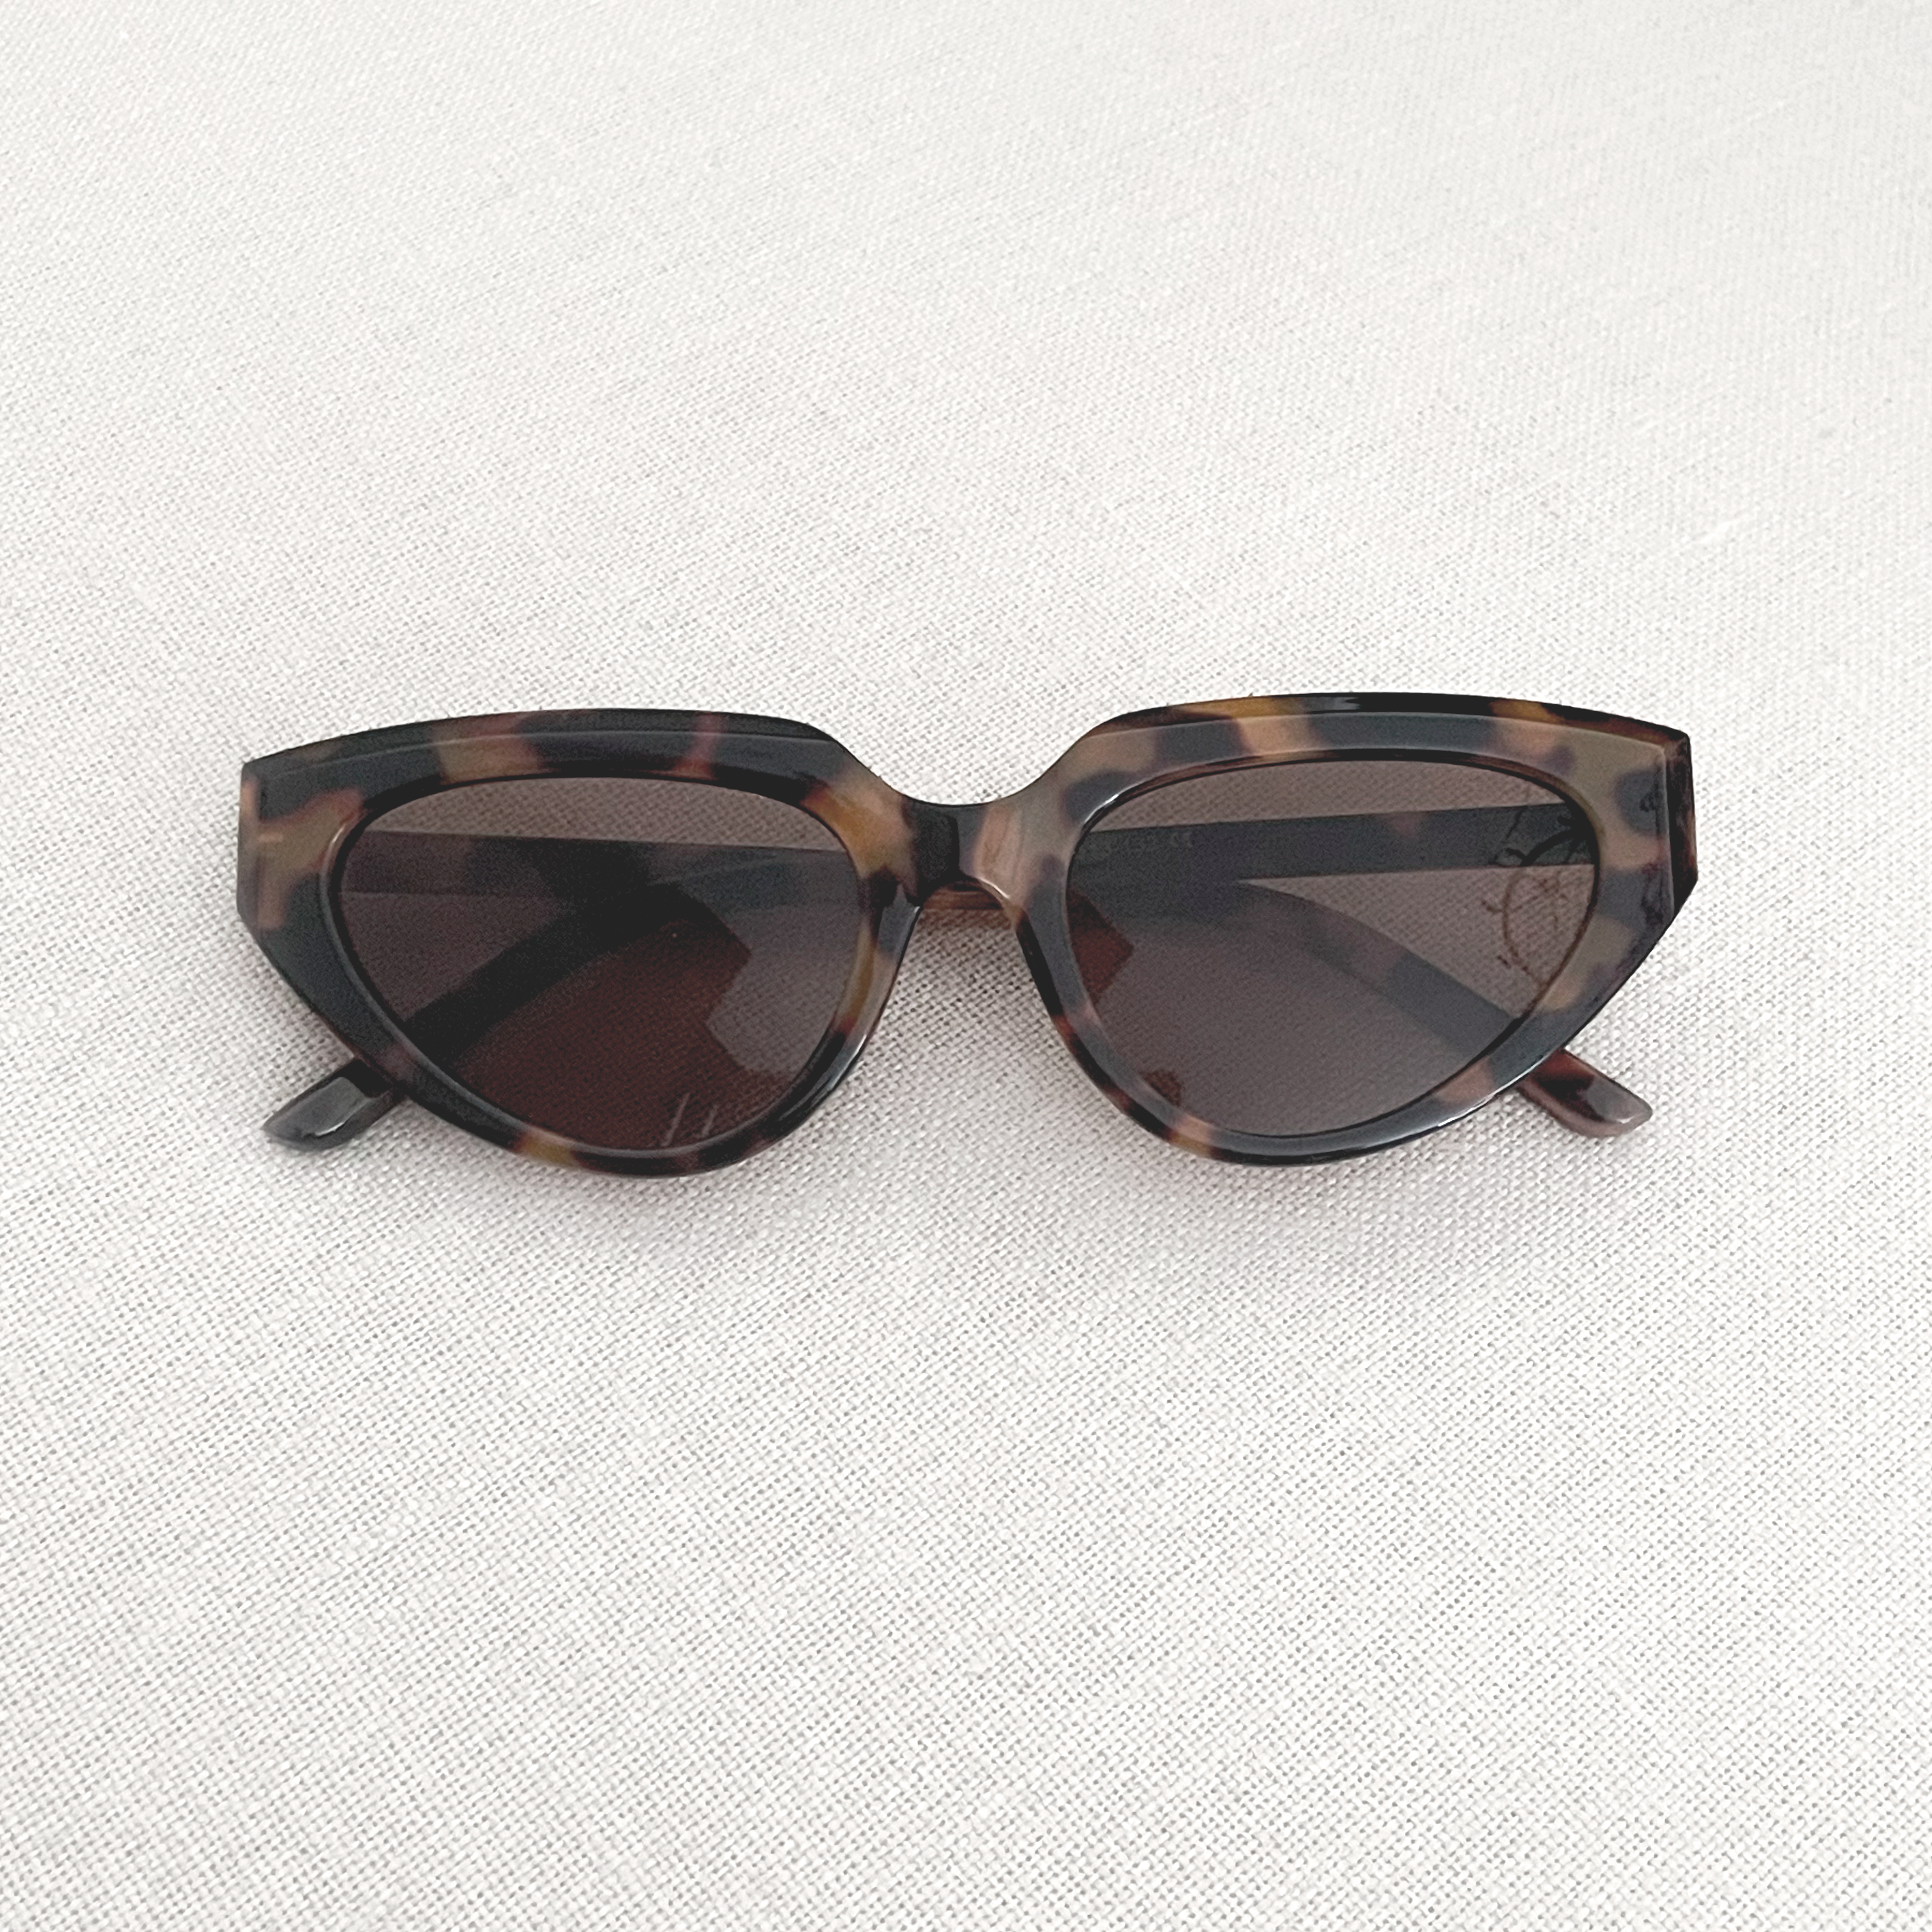 Sunglasses - Adult Tortoise